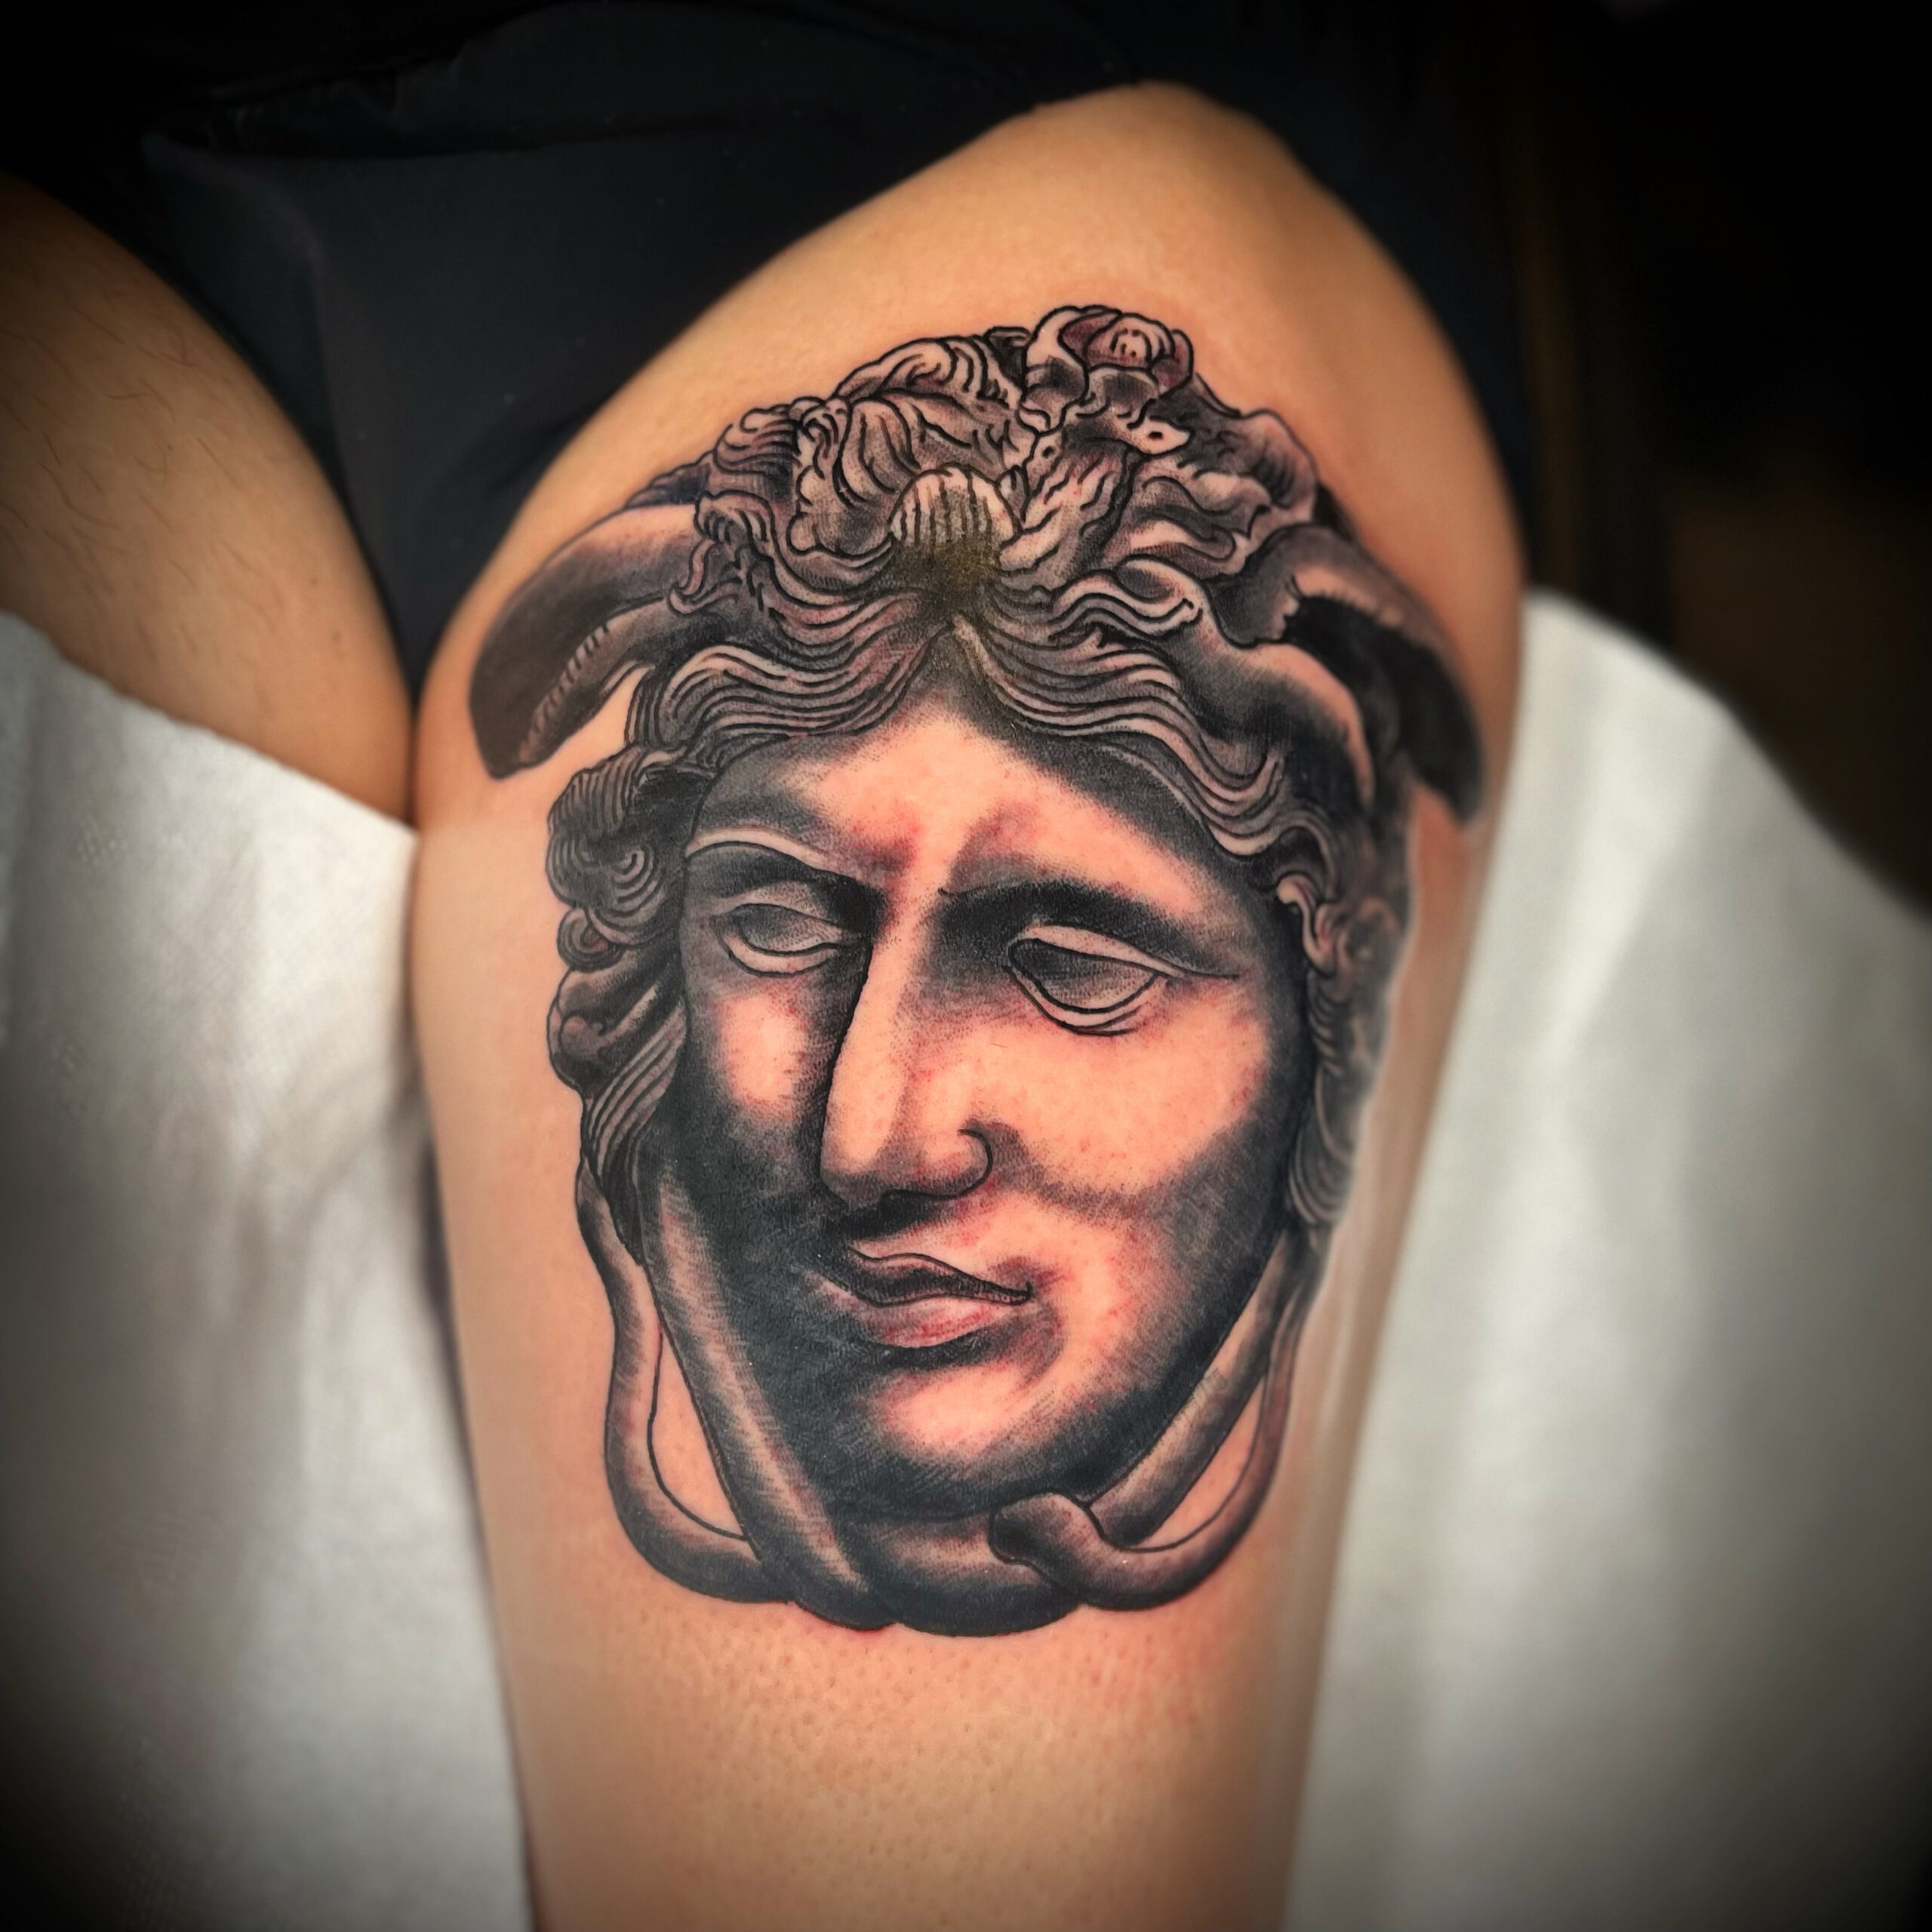 Greek sculpture tattoo from Dallas tattoo artist